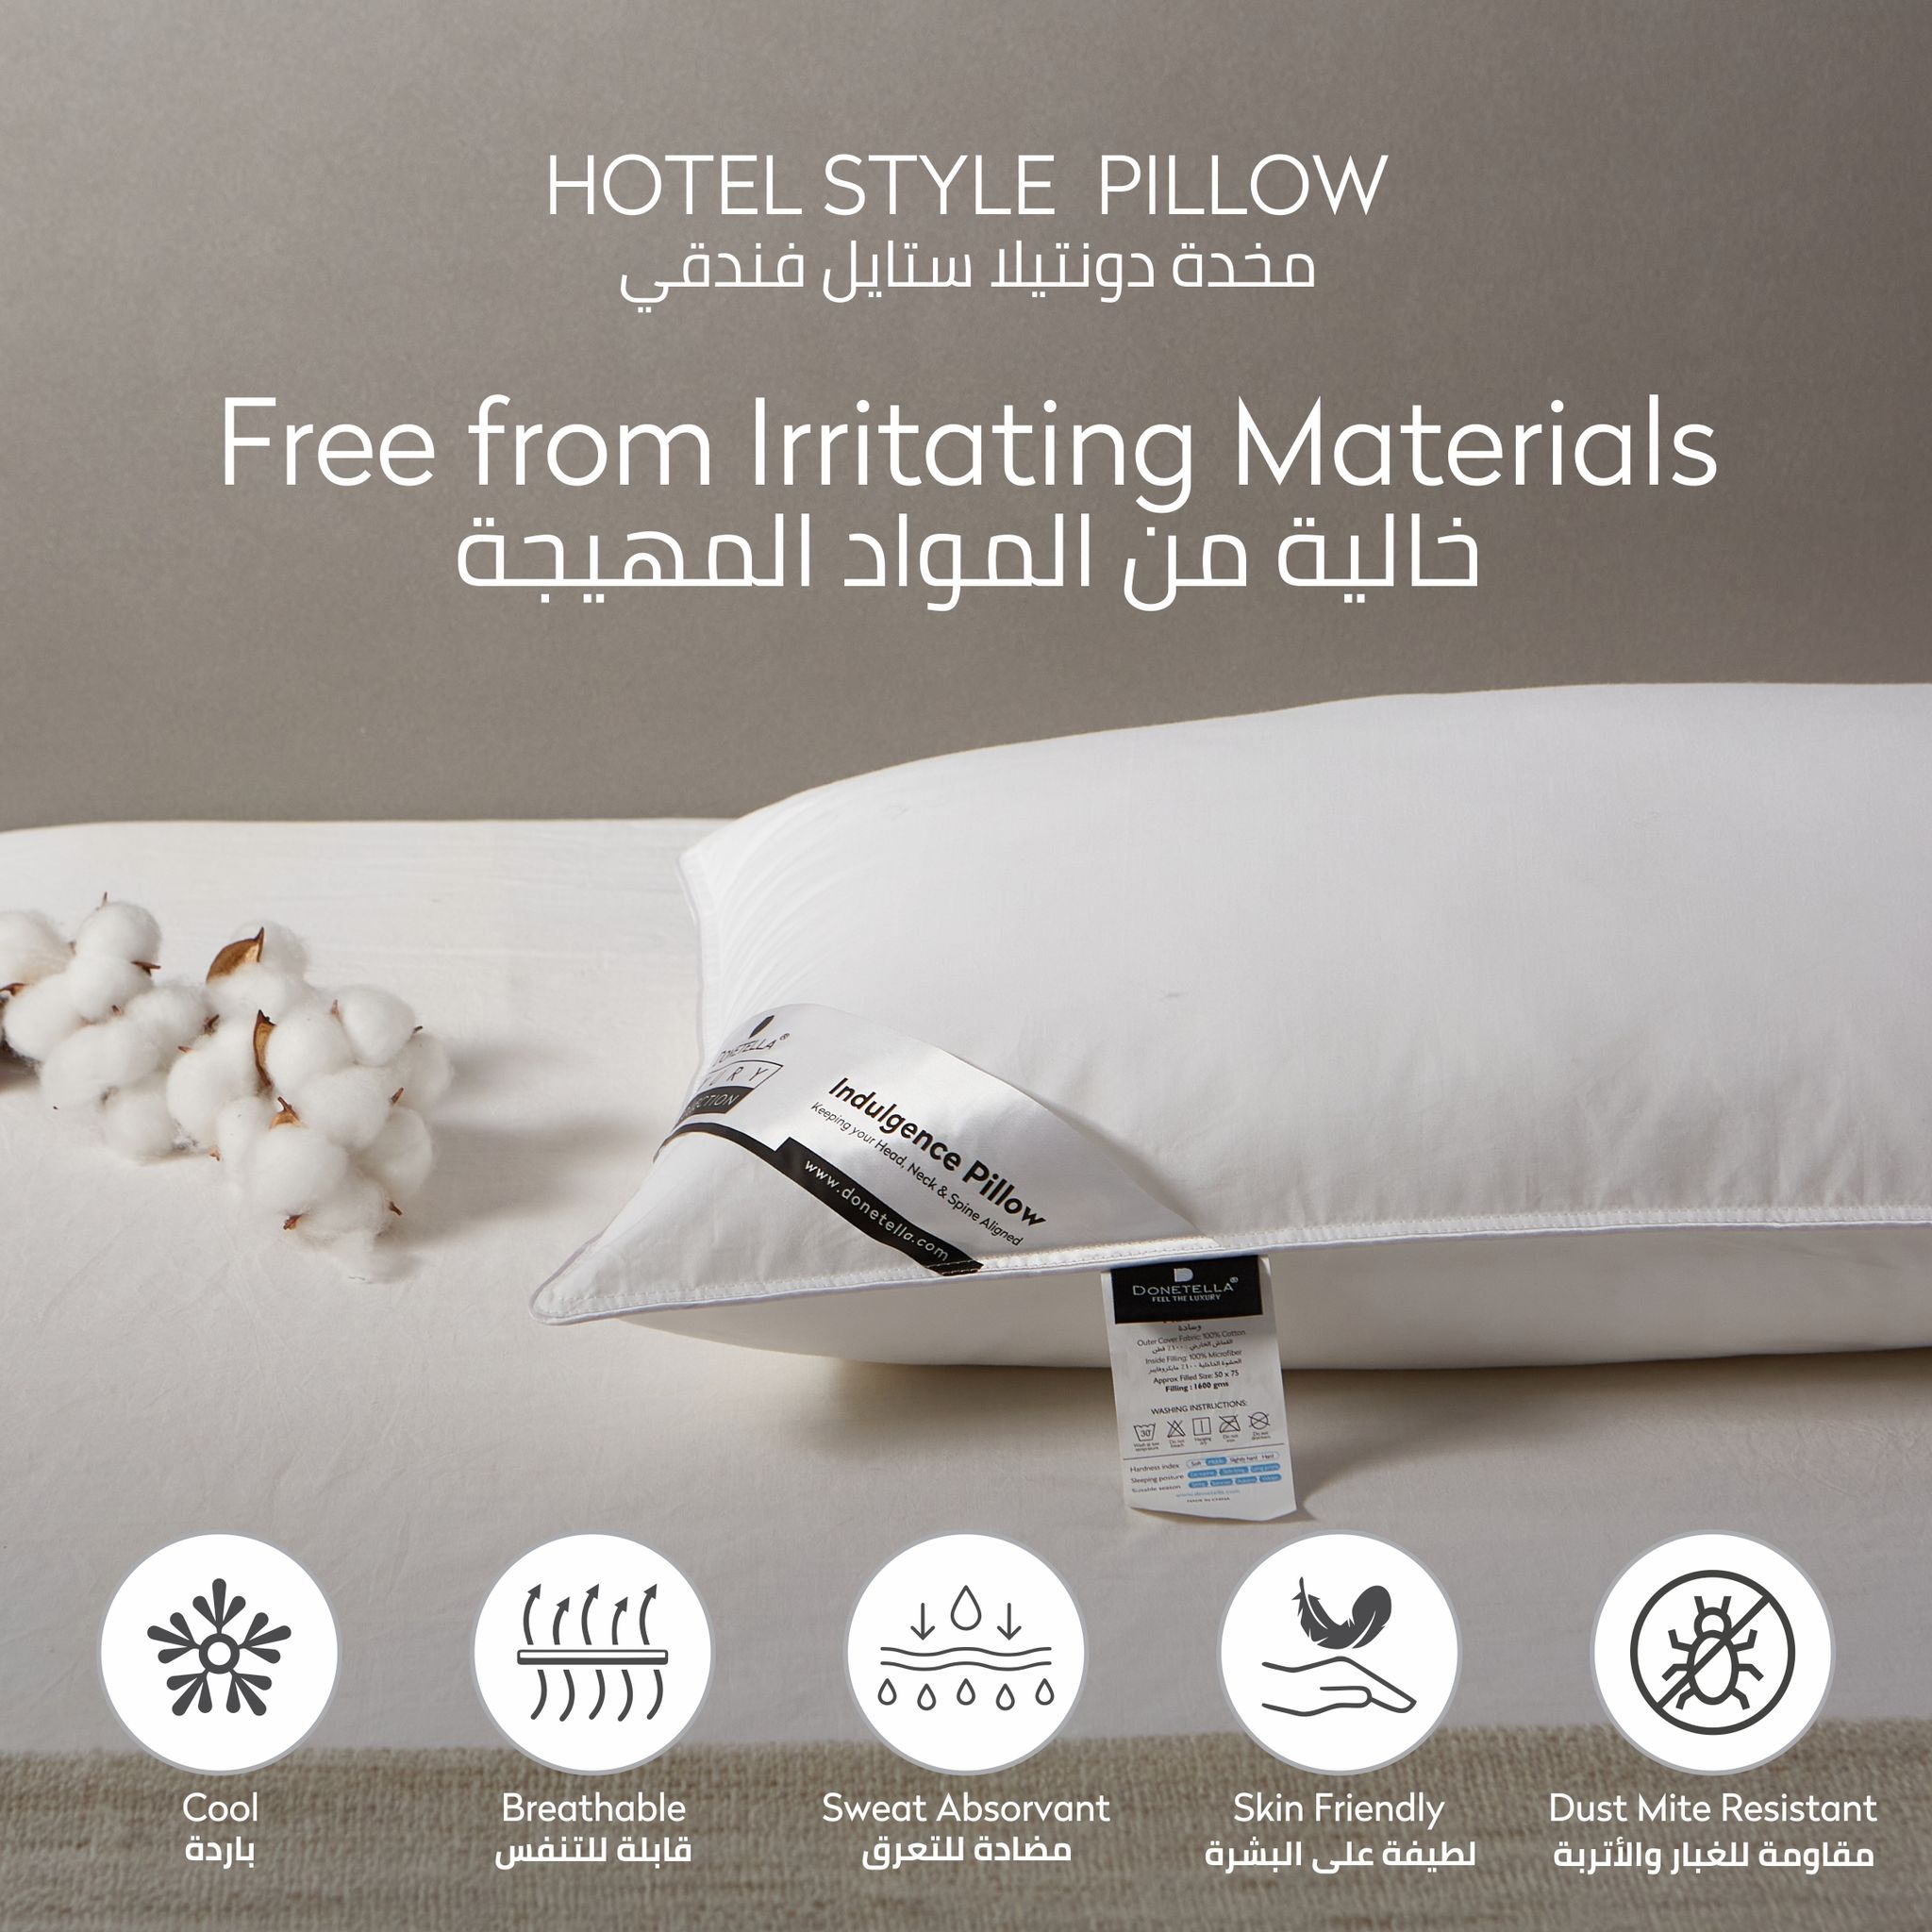 2 Pieces Hotel Pillow ,100% Cotton shell ,Double Edge Stitched , Premium Gel Fiber 2 Kg Filling each,  50x75 , Soft Loft